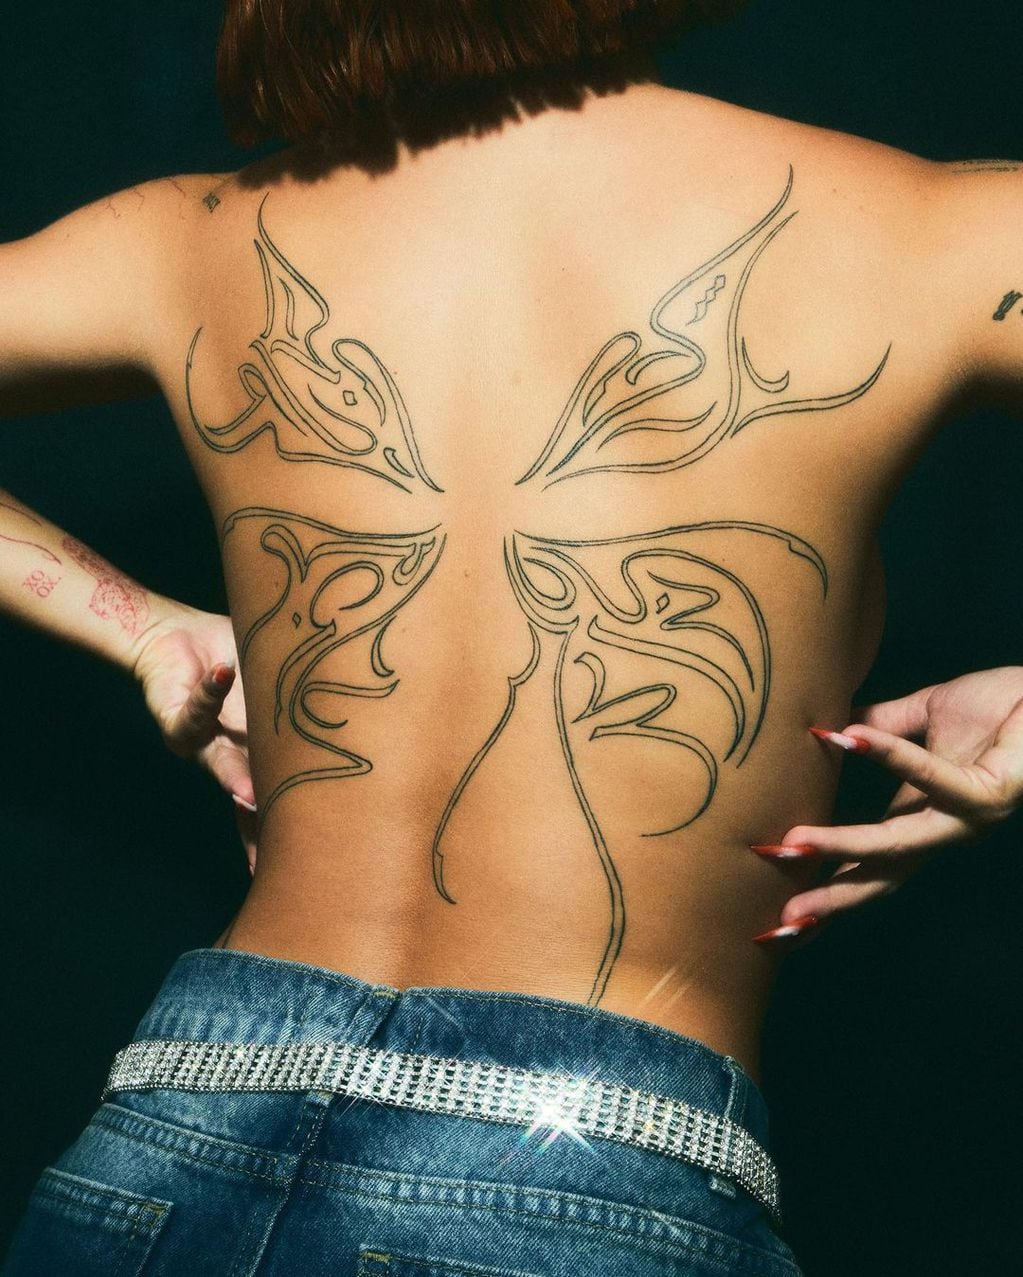 De espaldas, Tuli Acosta mostró arte en su piel.